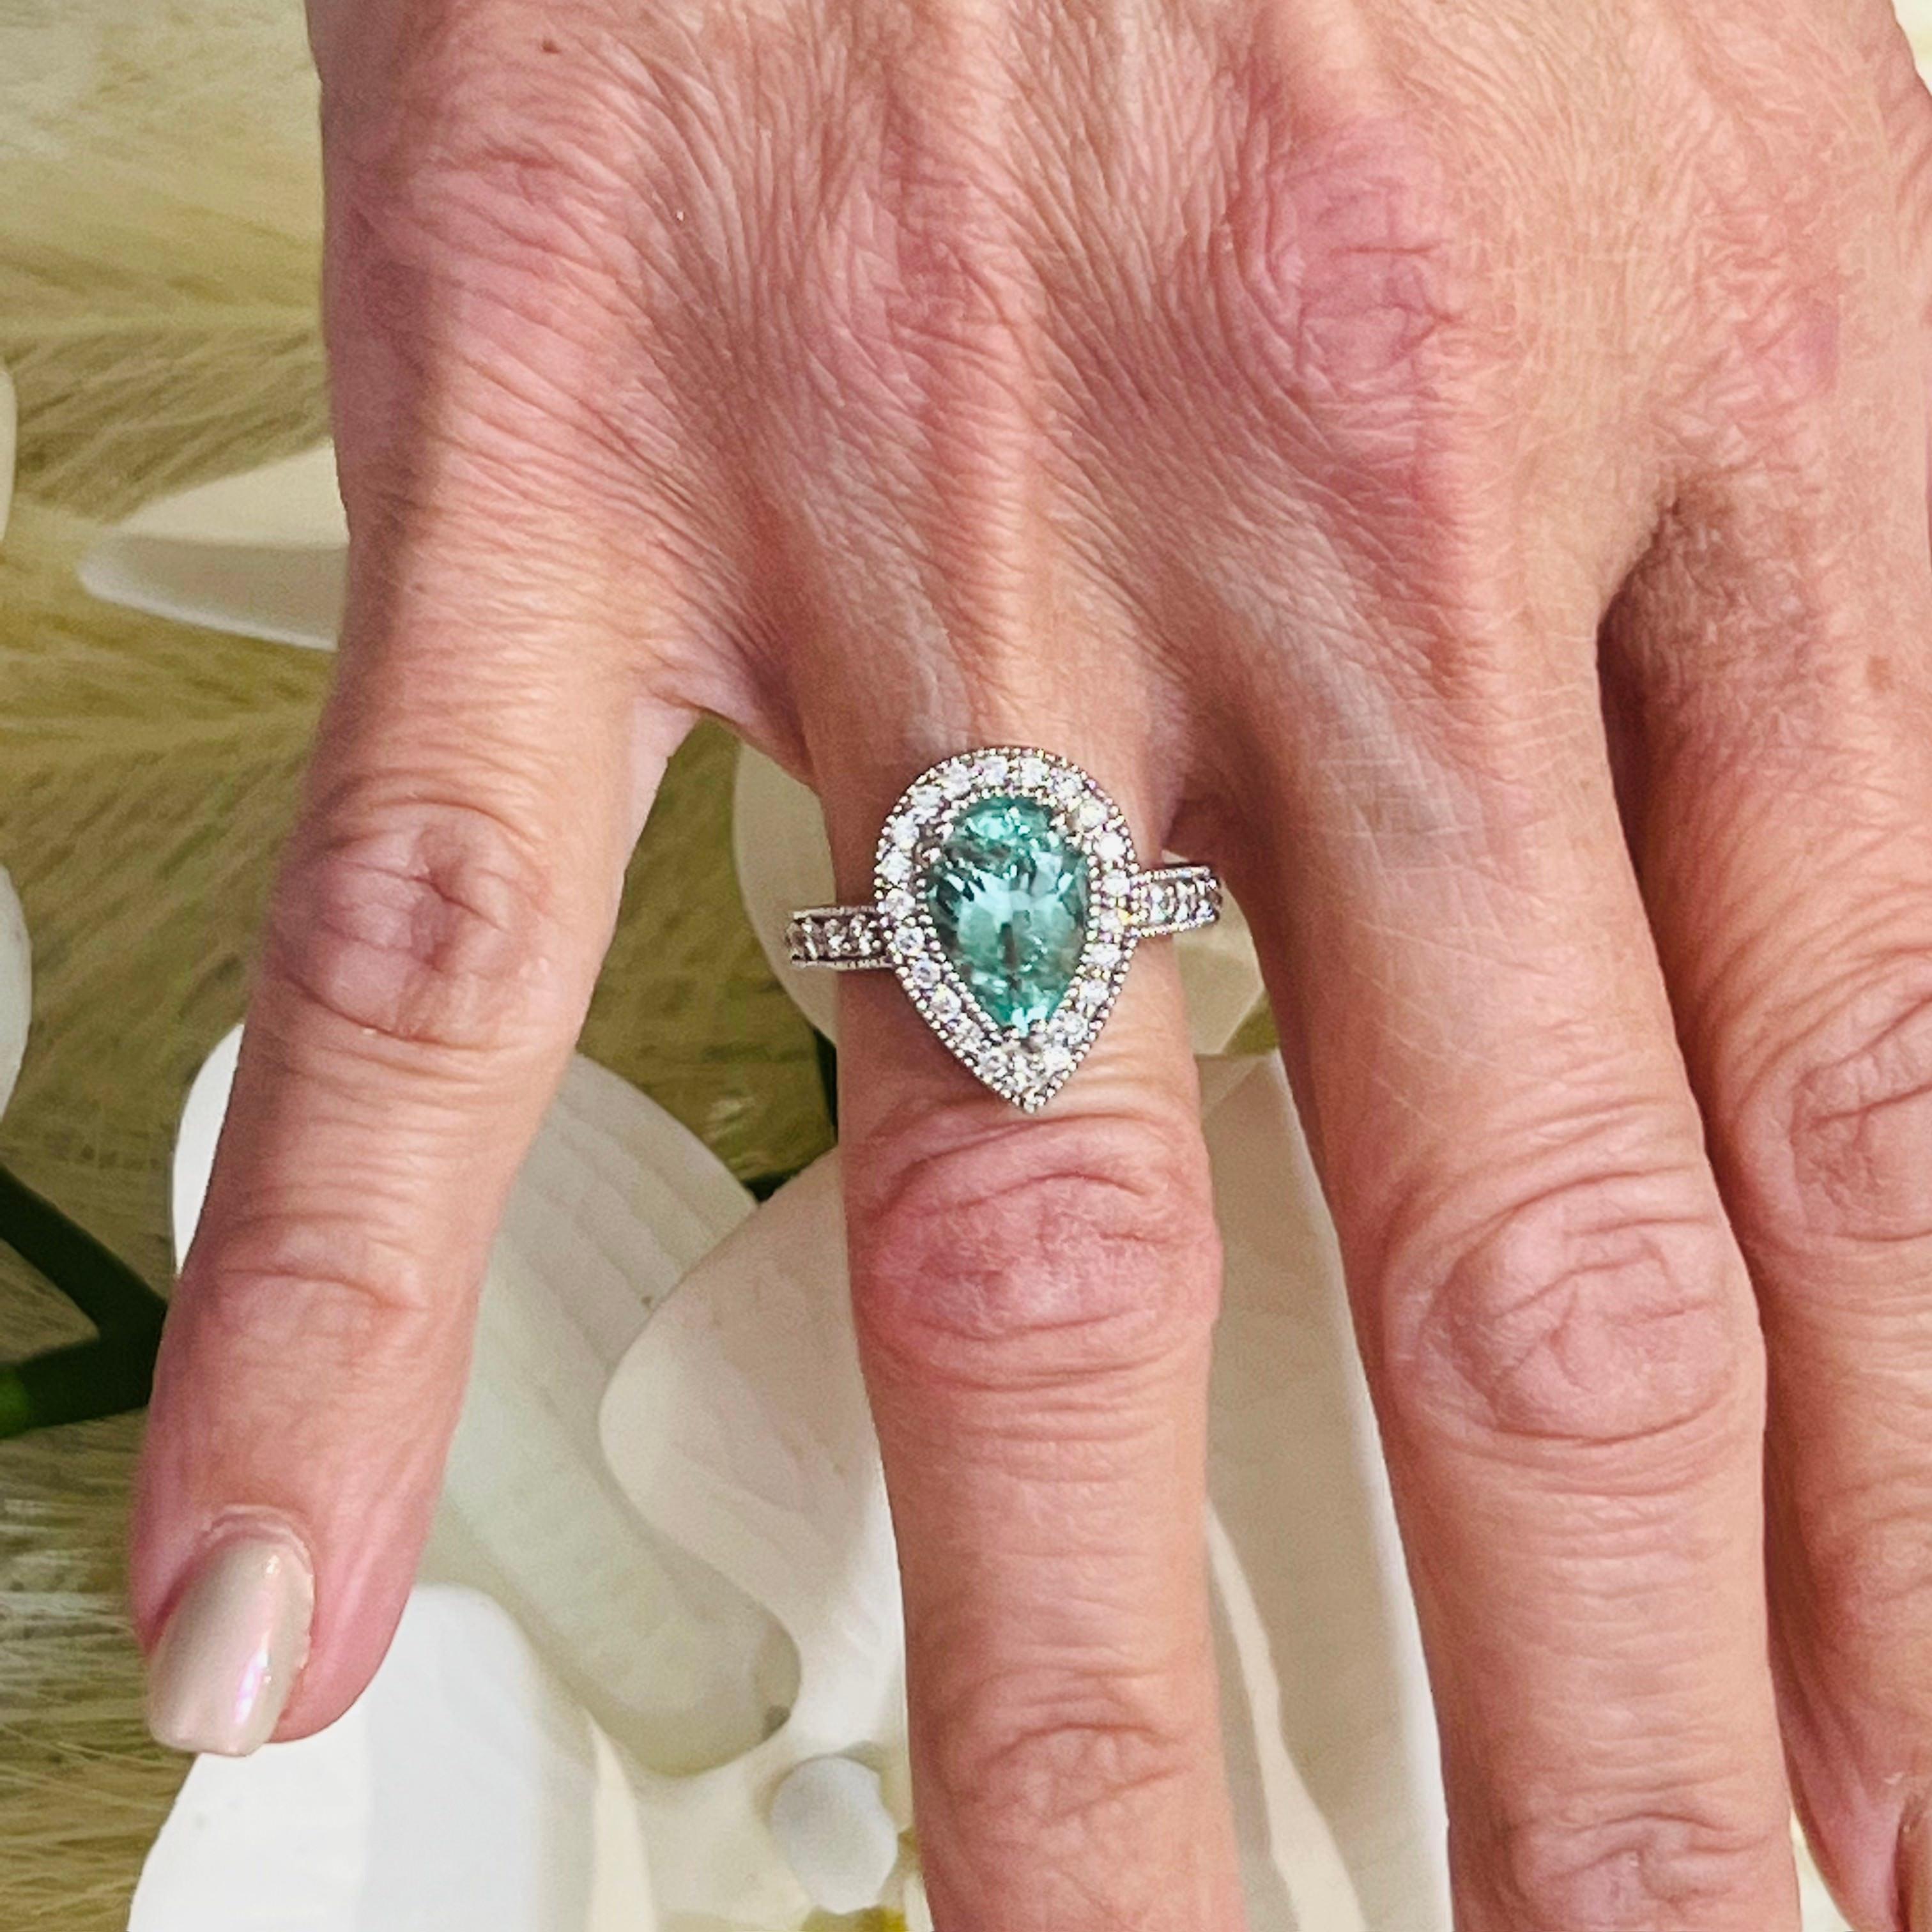 Natürliche kolumbianische Smaragd Diamant Ring Größe 6,5 14k W Gold 3,27 TCW zertifiziert $7.950 216675

Nichts sagt mehr 